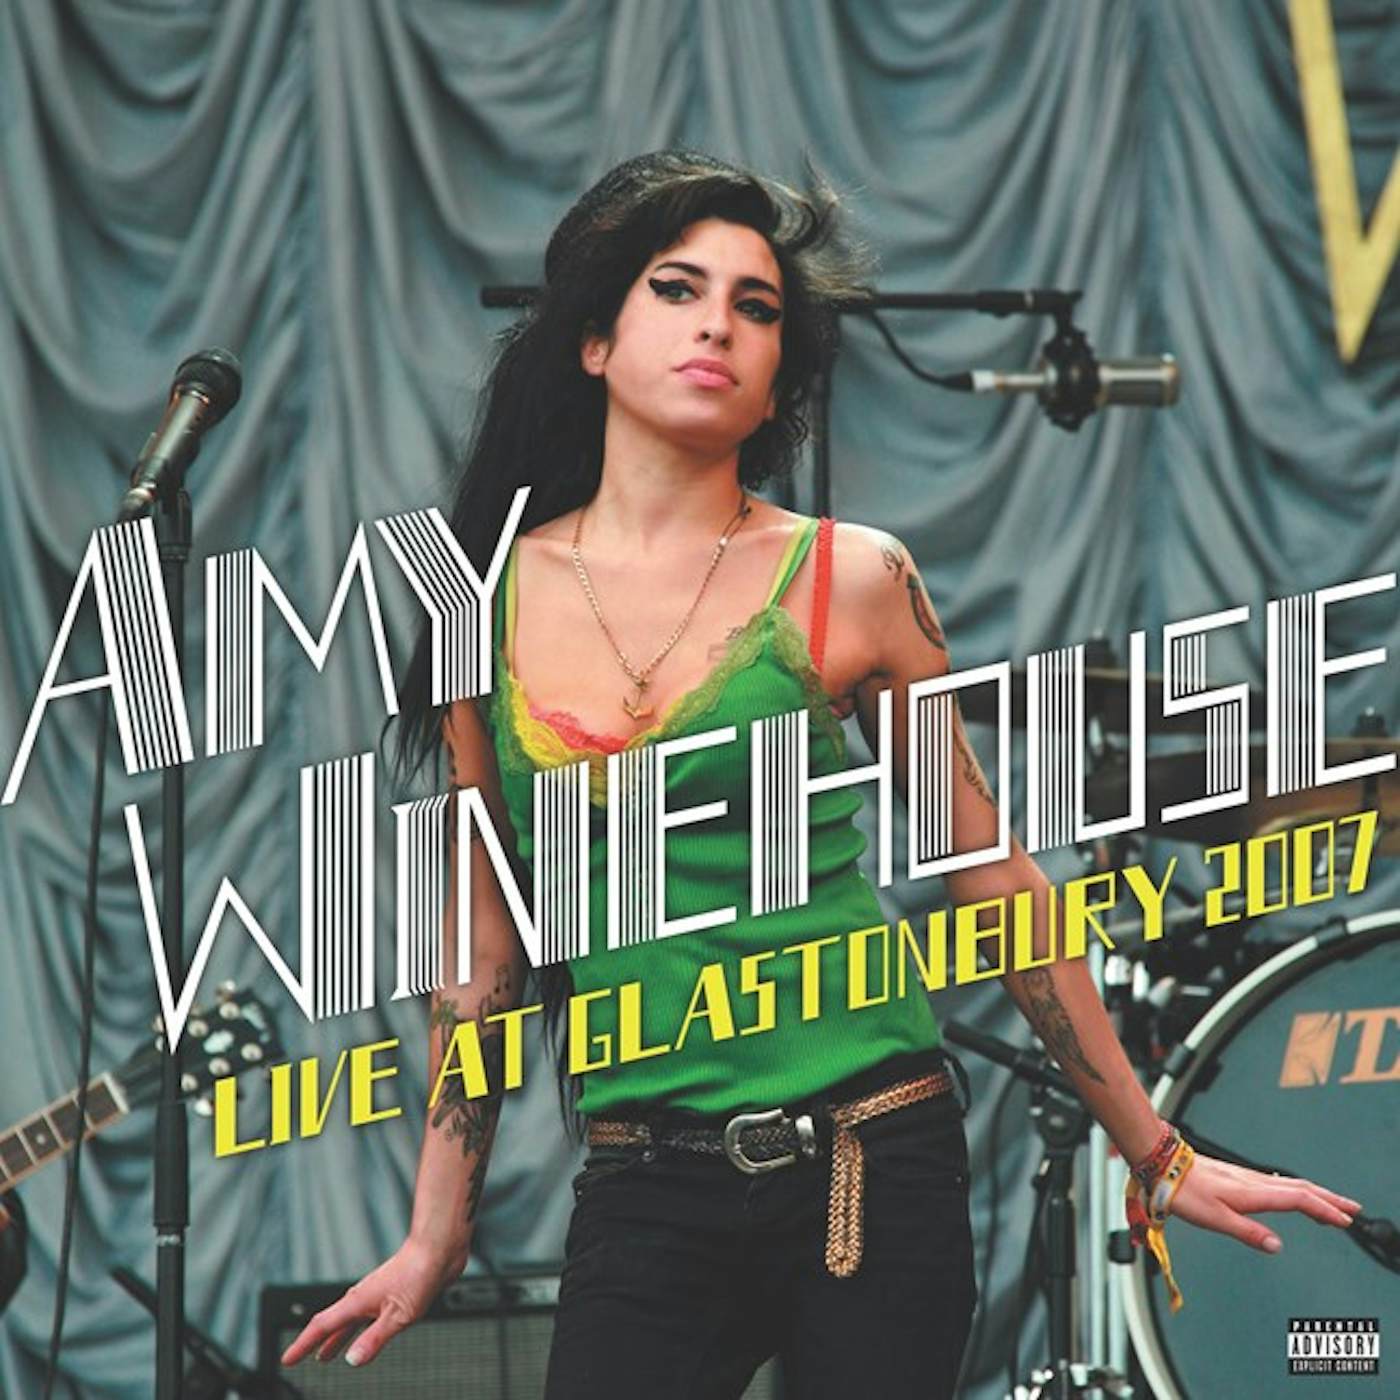 Amy Winehouse Live At Glastonbury 2007 Vinyl Record